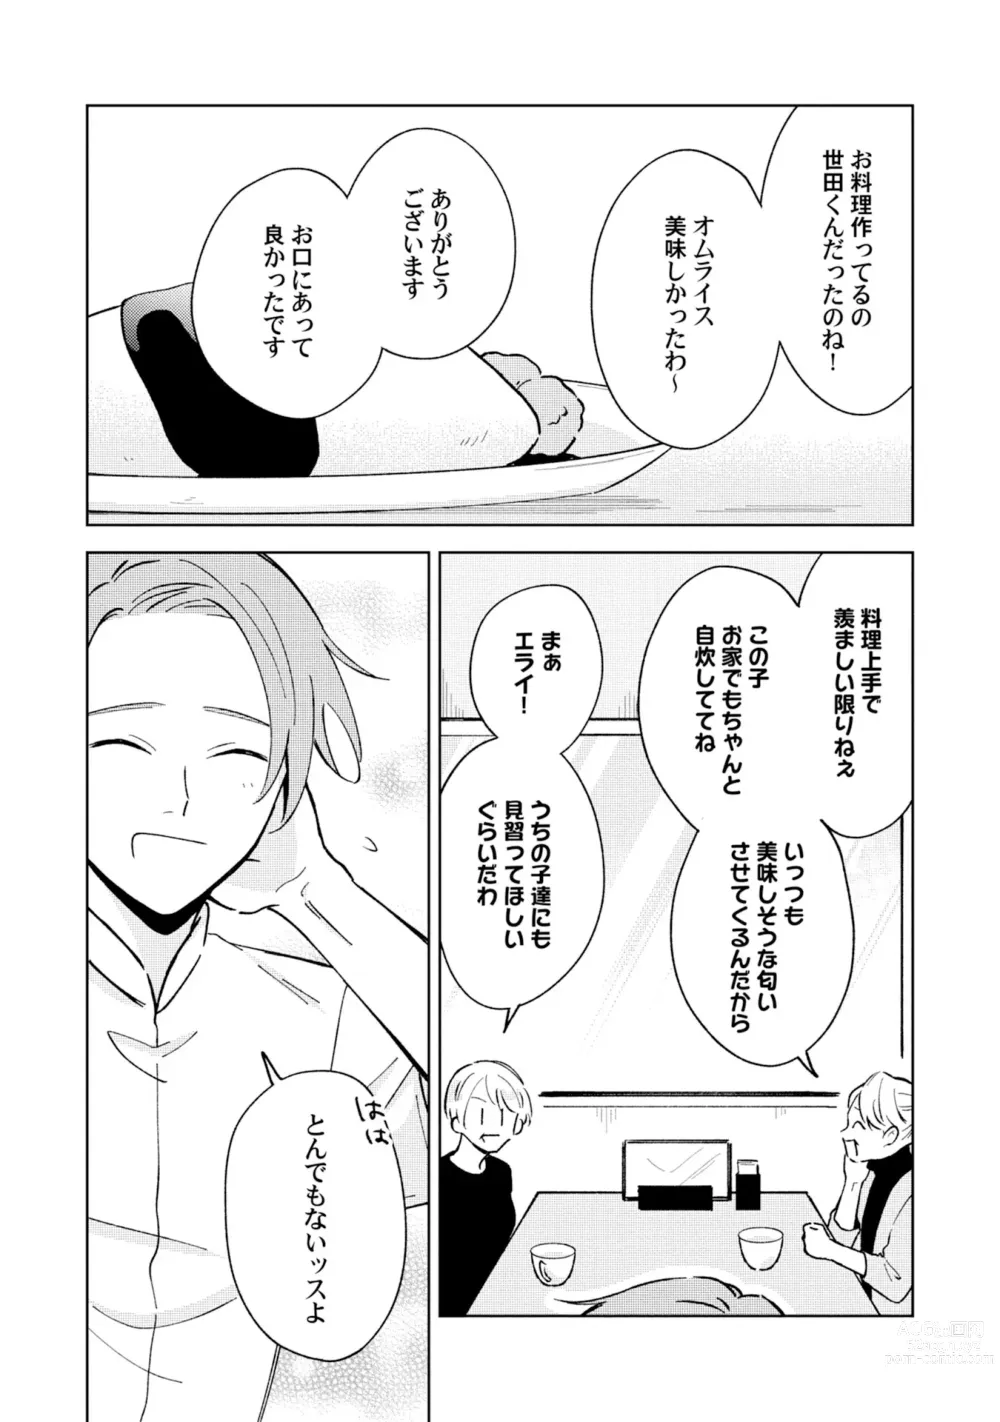 Page 6 of manga Toho 3-byou no Trouble Love Room 4